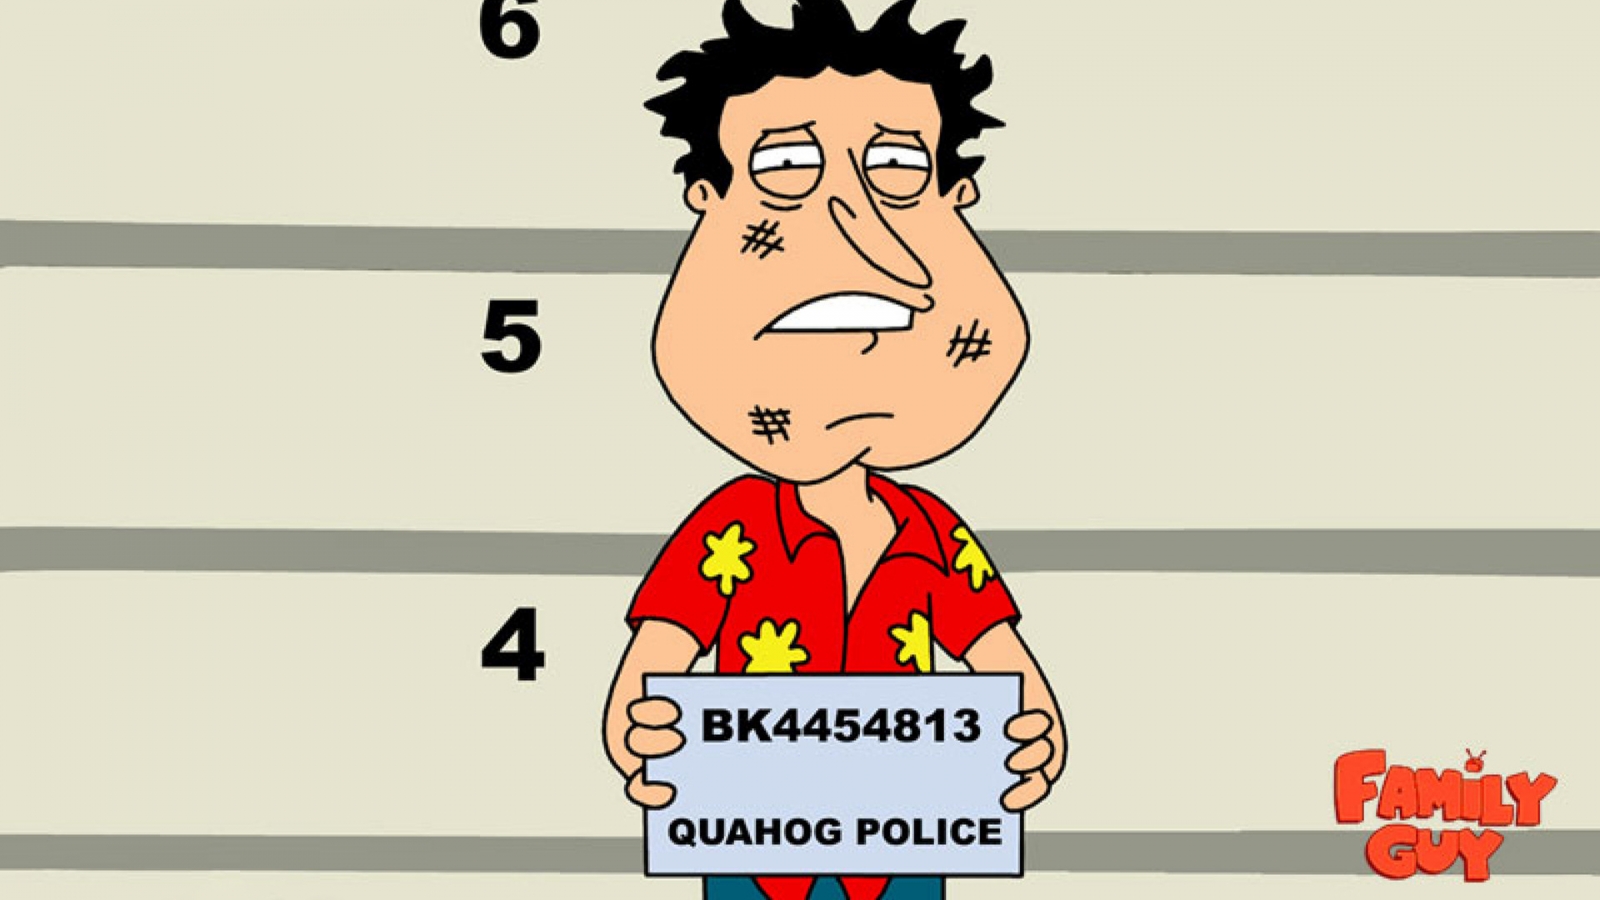 Family Guy Quagmire for 1600 x 900 HDTV resolution